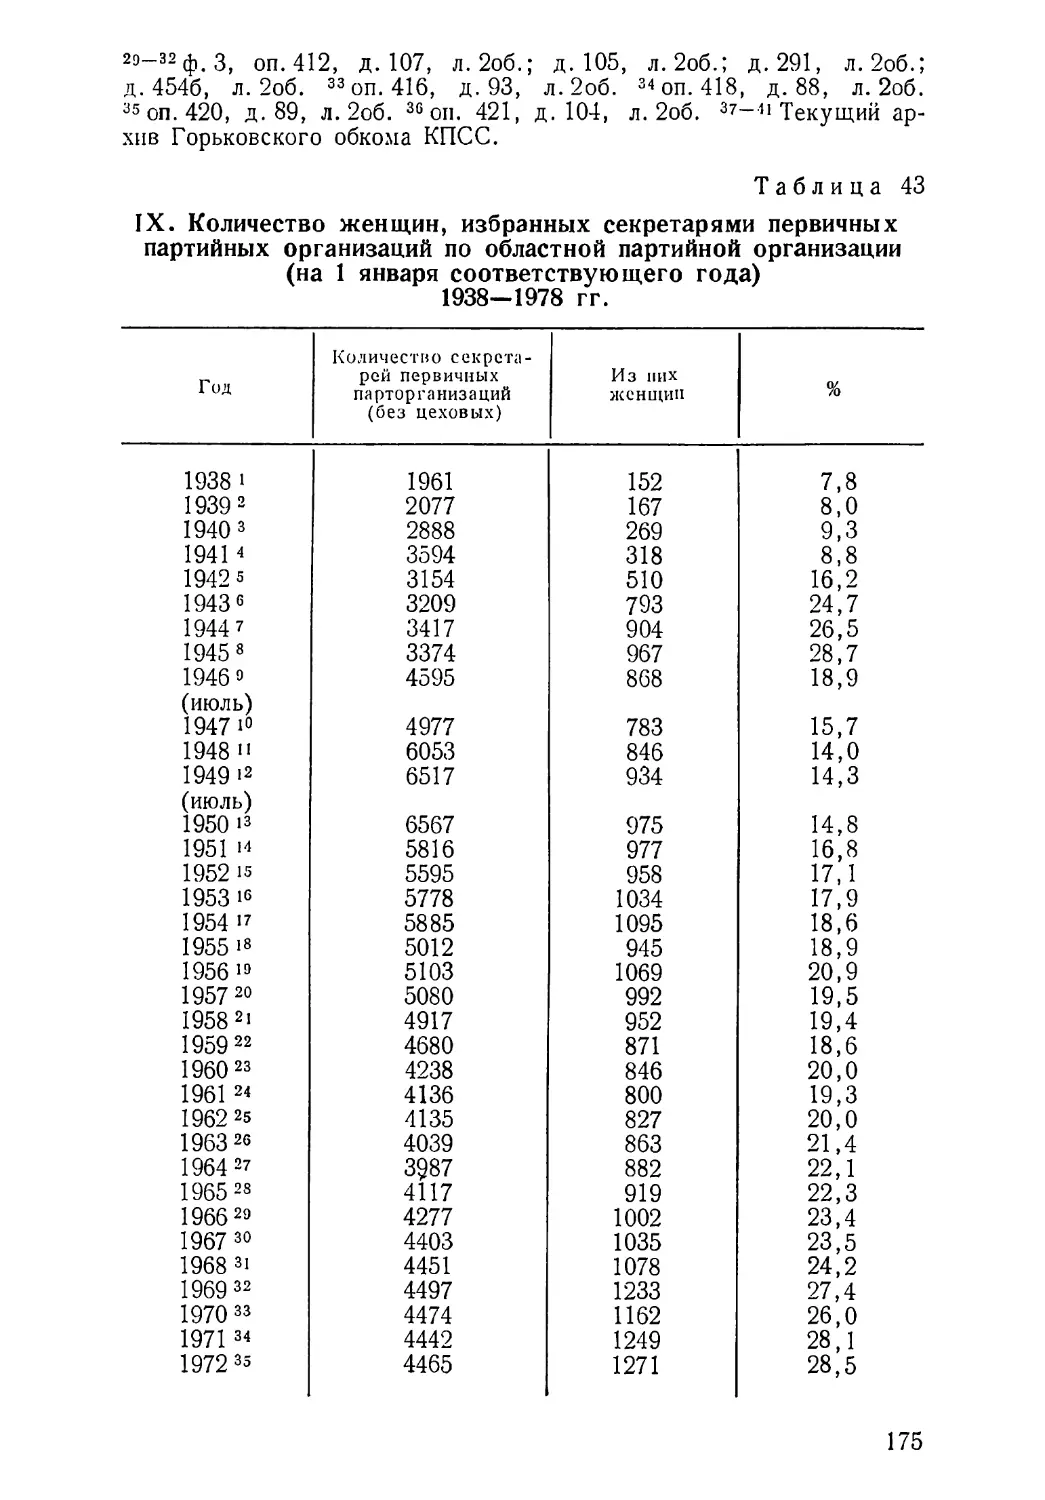 Количество женщин, избранных секретарями первичных партийных организаций 1938—1978 гг. Таблица 43